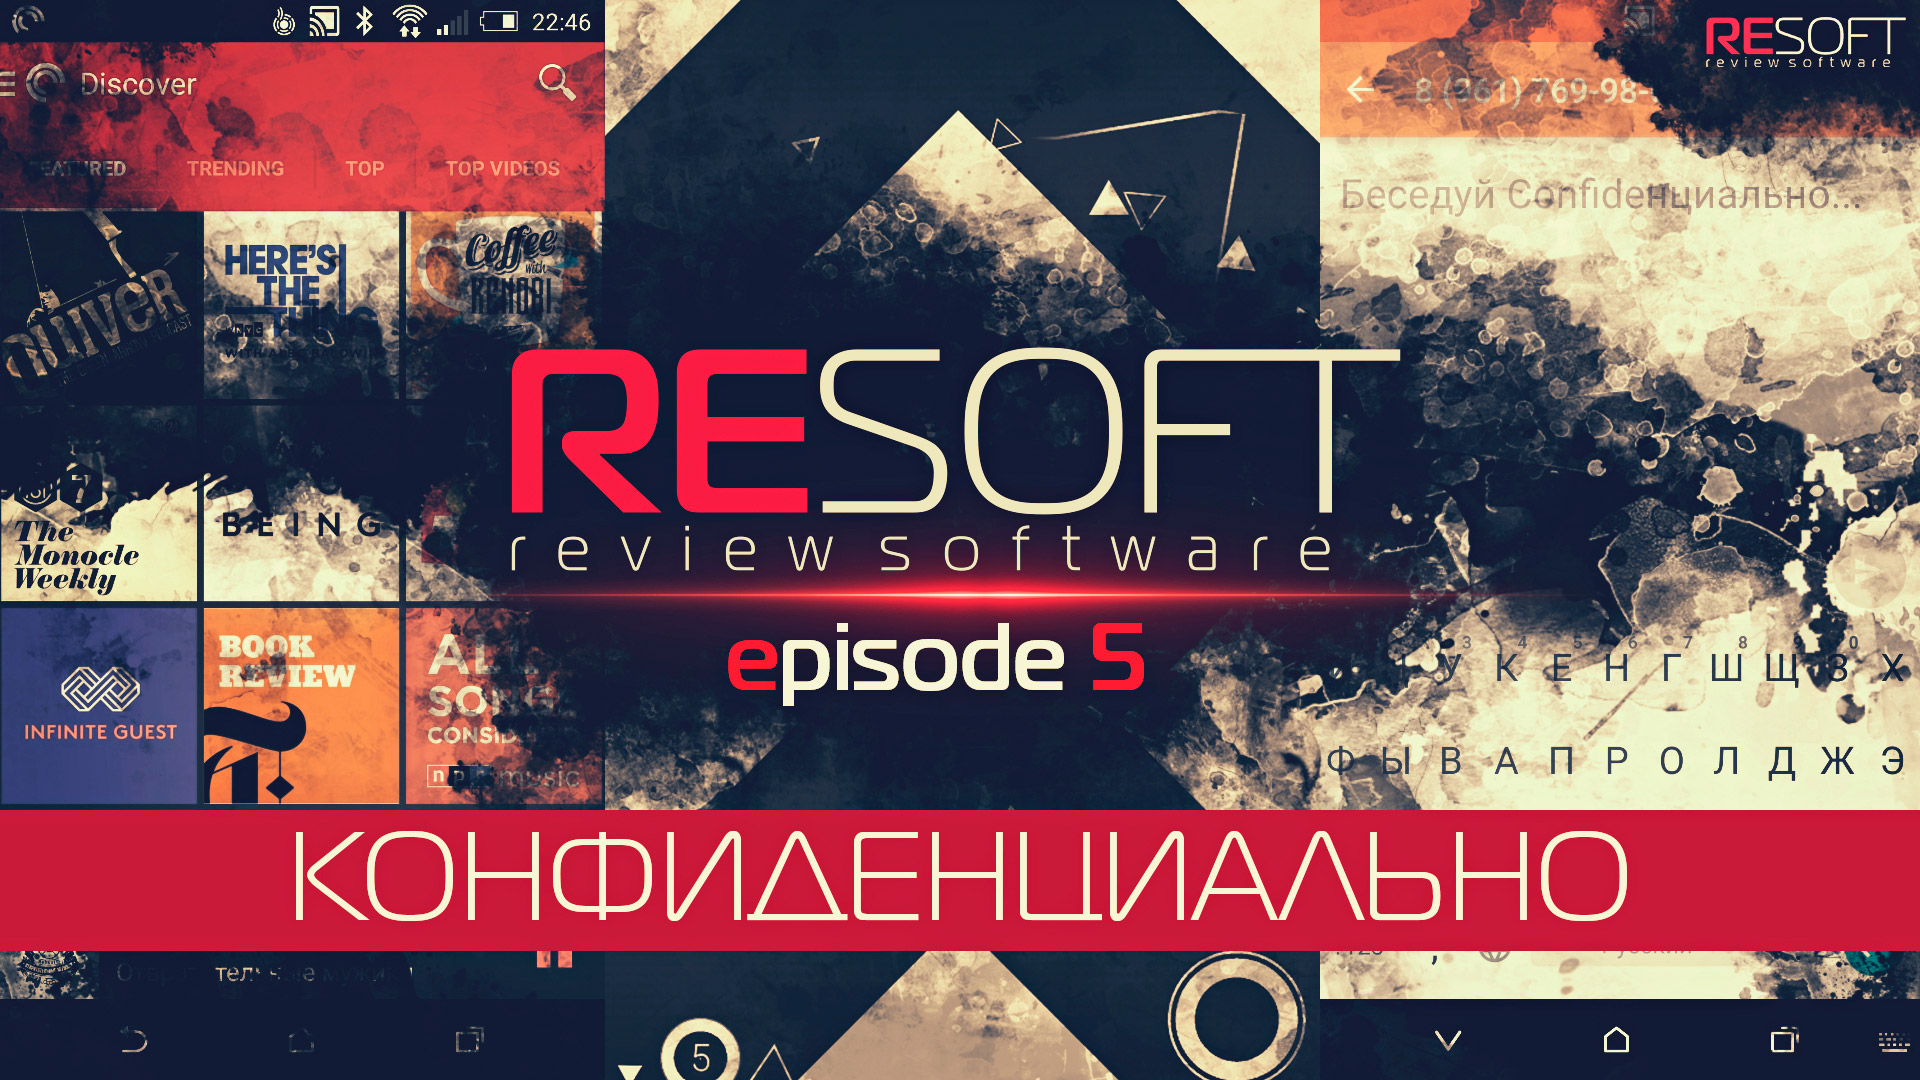 RESOFT episode 5  КОНФИДЕНЦИАЛЬНО (Pocket Casts, MySMS, Confide, ULTRAFLOW)